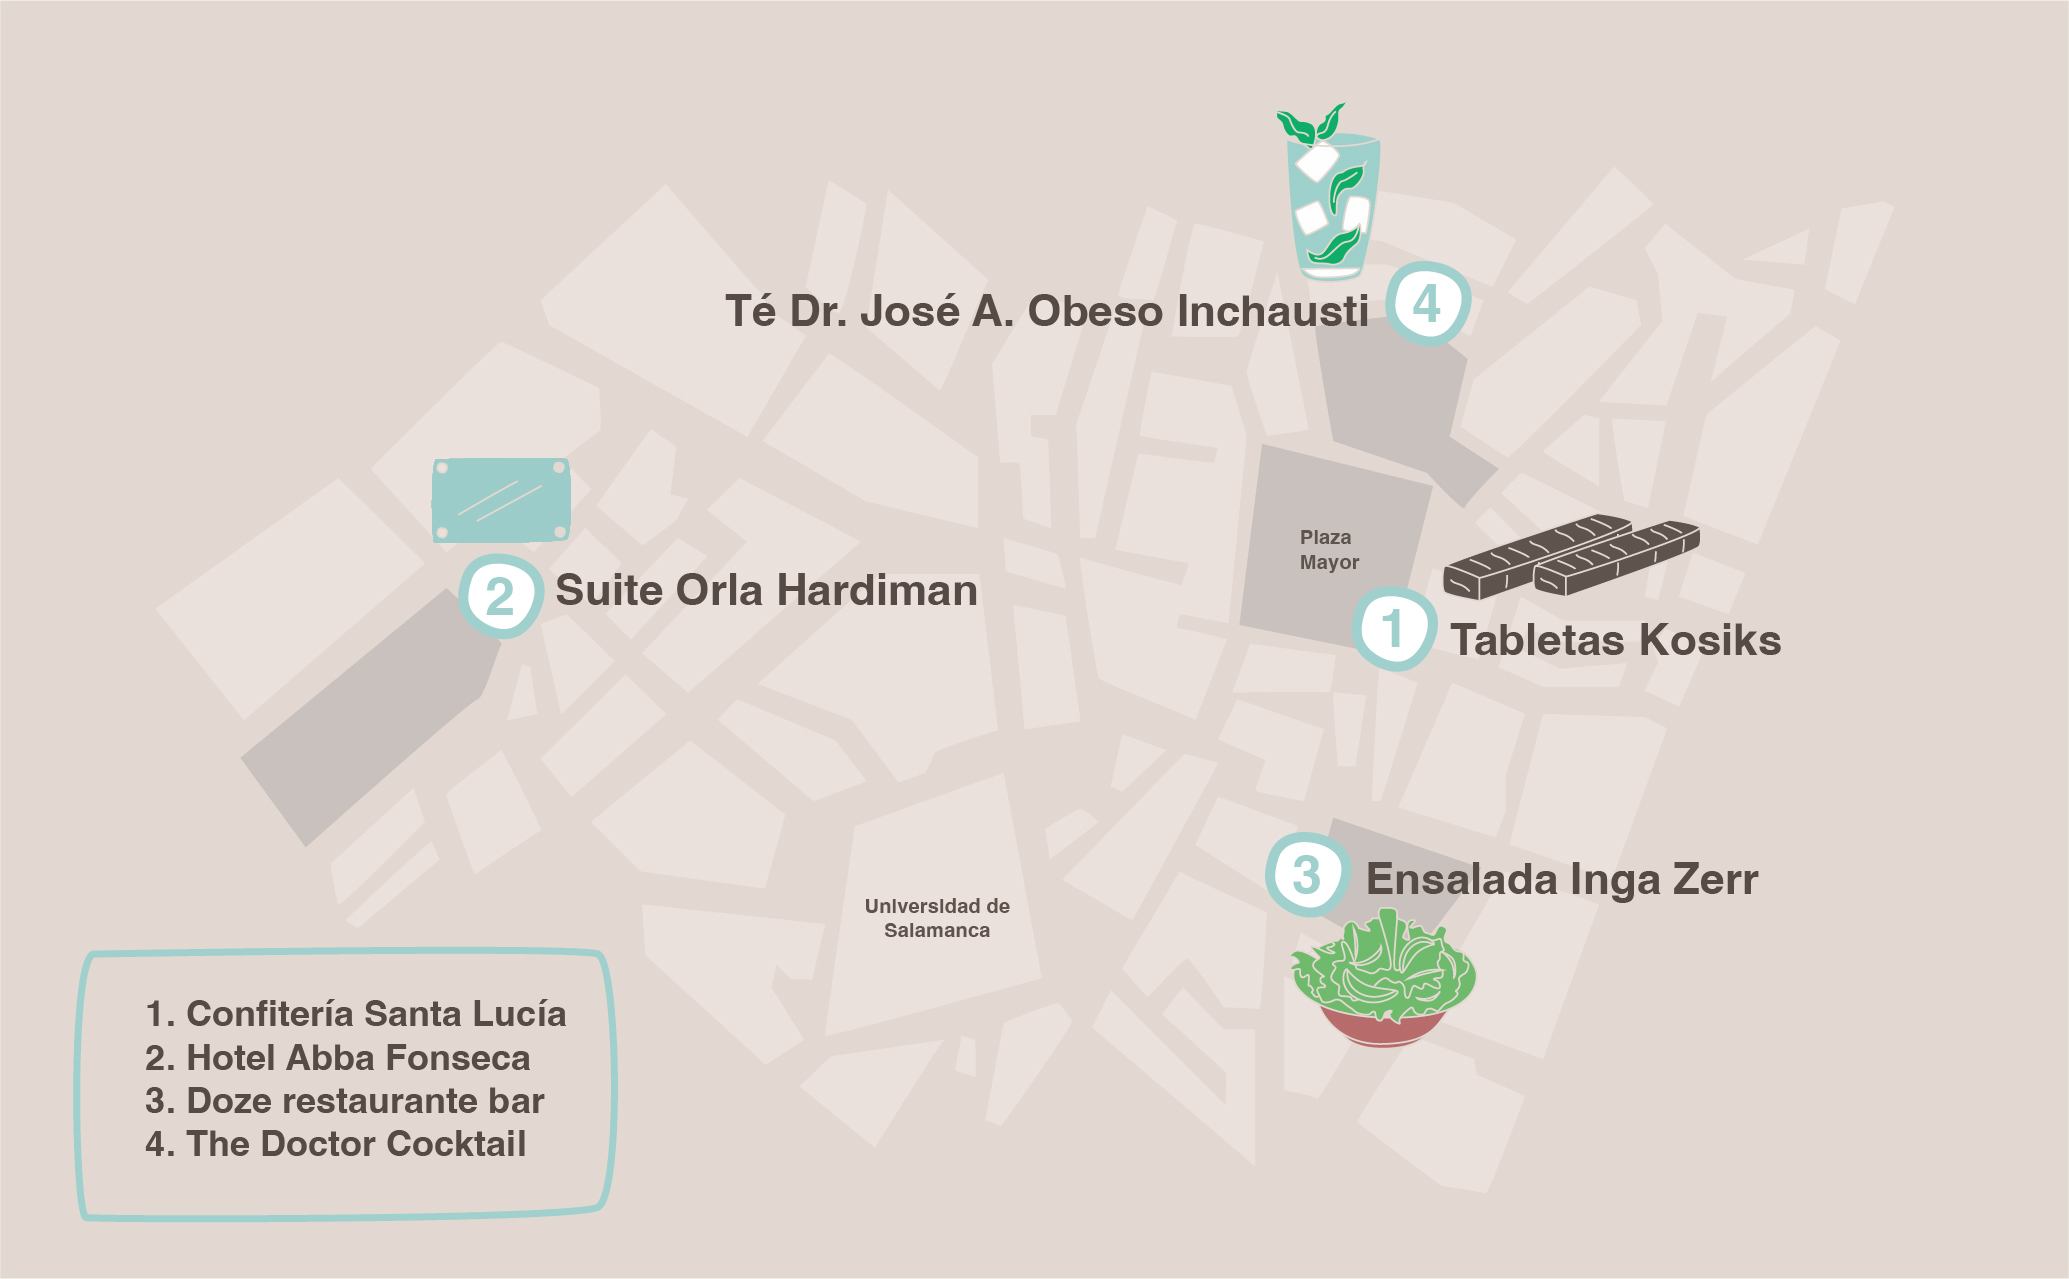 mapa de salamanca con los homenajes a cientificos